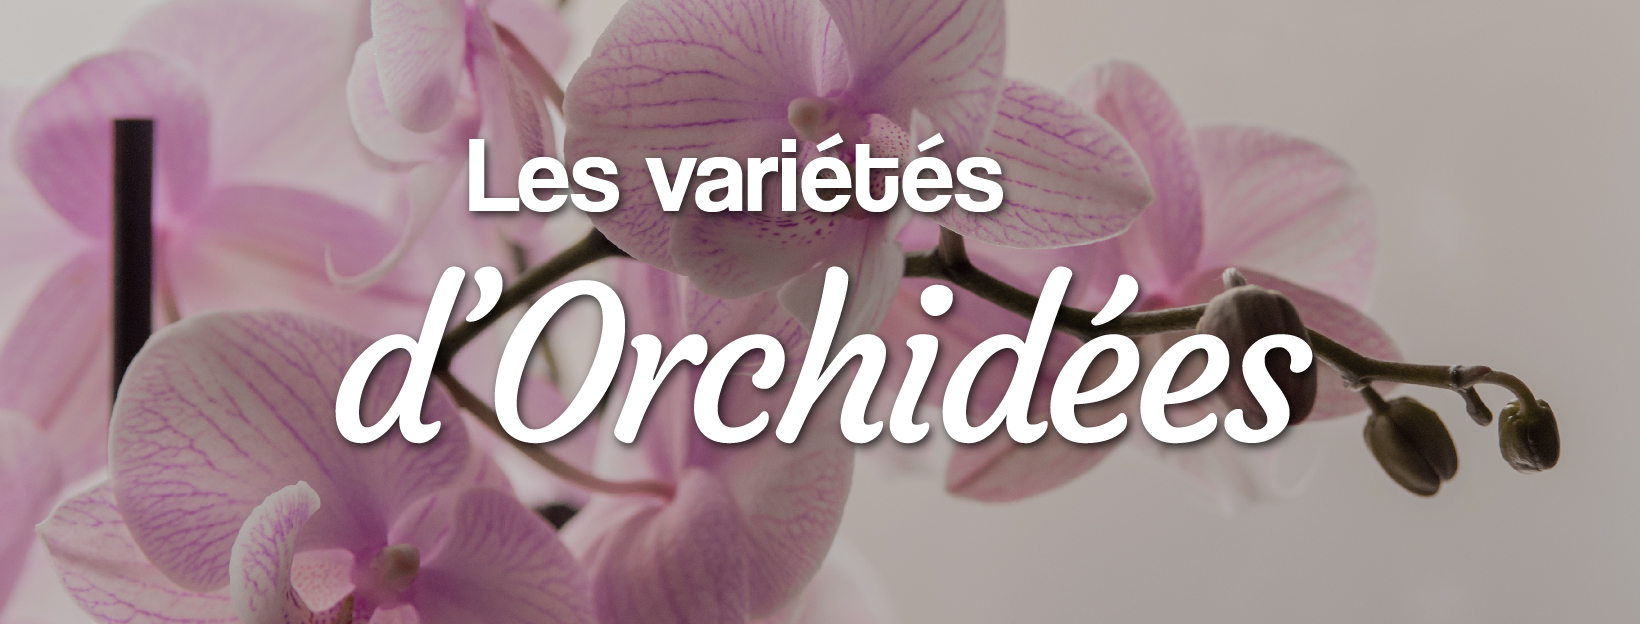 les variétés d'orchidées